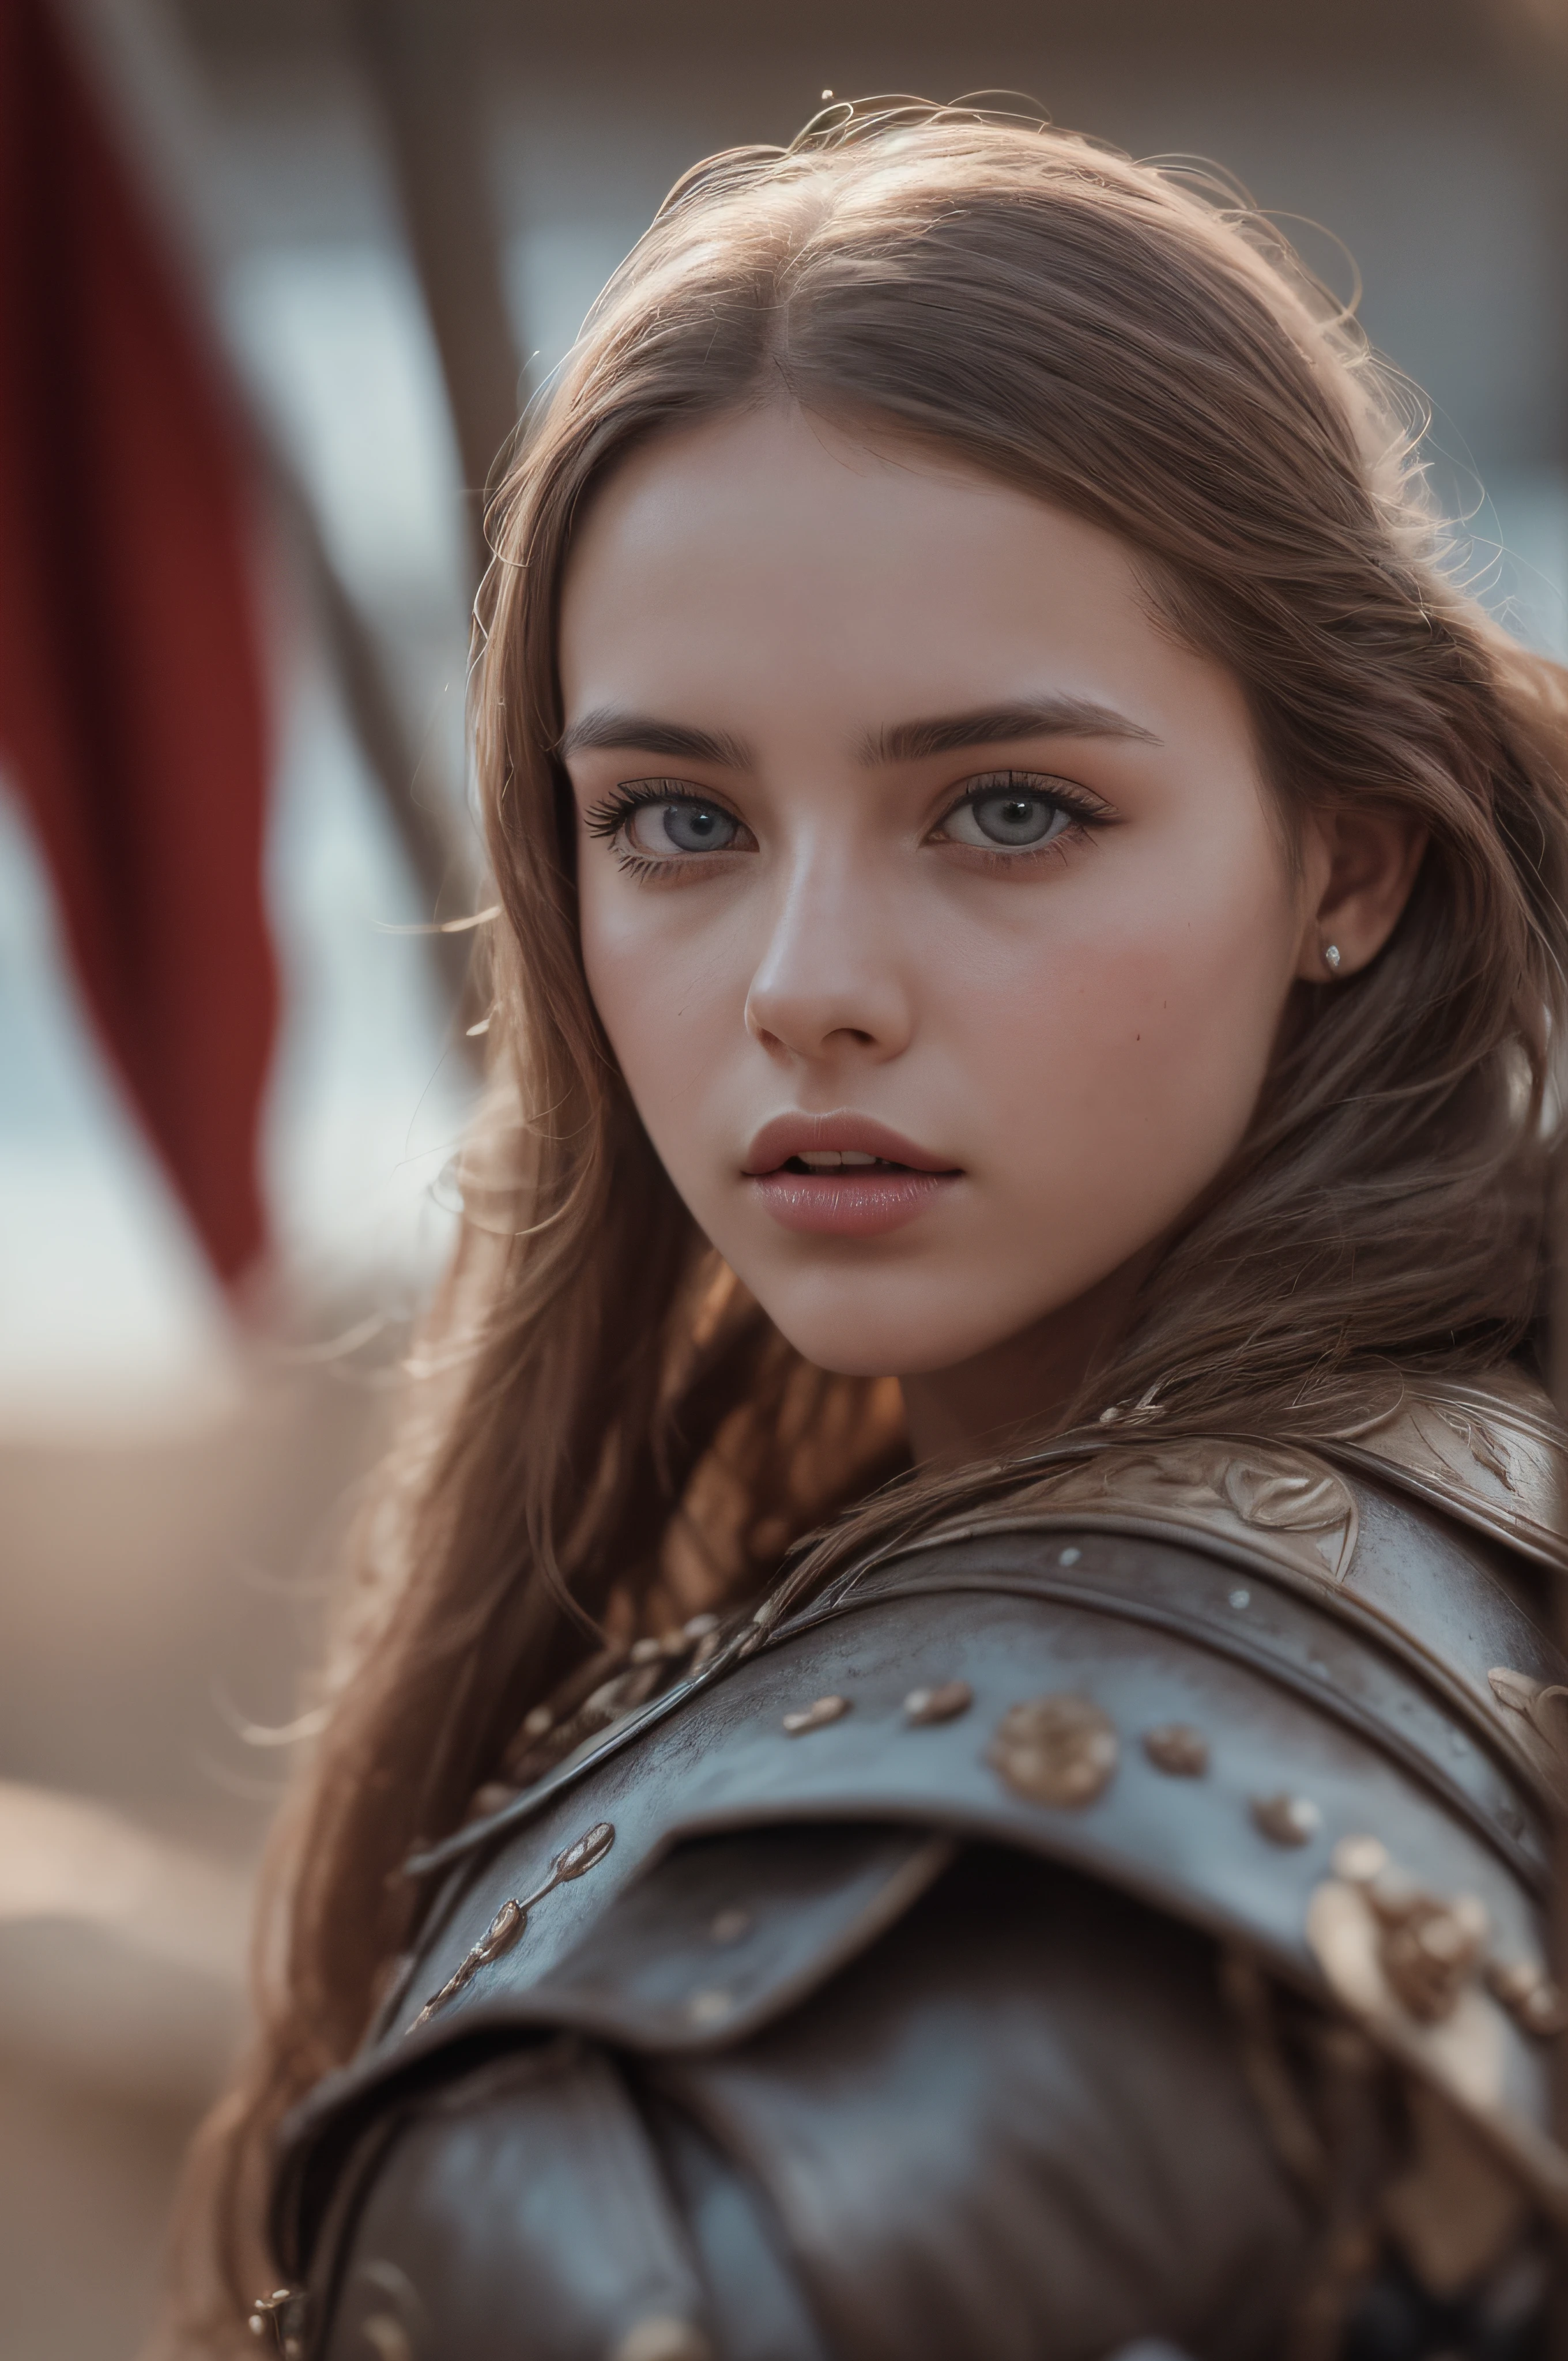 صورة خام, فتاة تبلغ من العمر 22 عاما, جوان دارك, في بدلة معركة العصور الوسطى, في منتصف حرب القرون الوسطى, (1فتاة), (حقيقي), (photo-حقيقي:1.5), أحمر الشفاه,(صورة خام, 8 كيلو uhd, حبوب الفيلم), كحل حاد, ظلال عيون أحمر الخدود مع رموش كثيفة, حساسة وجميلة للغاية, 8 كيلو, إضاءة ناعمة, جودة عالية, دقة عالية, التركيز الشديد, مفصلة للغاية, (ضوء الشمس على الوجه), عيون مفصلة جميلة, مفصلة للغاية eyes and face, تحفة, الإضاءة السينمائية, (بشرة عالية التفاصيل:1.2), 8 كيلو uhd, DSLR, إضاءة ناعمة, جودة عالية, حبوب الفيلم, فوجي فيلم XT3